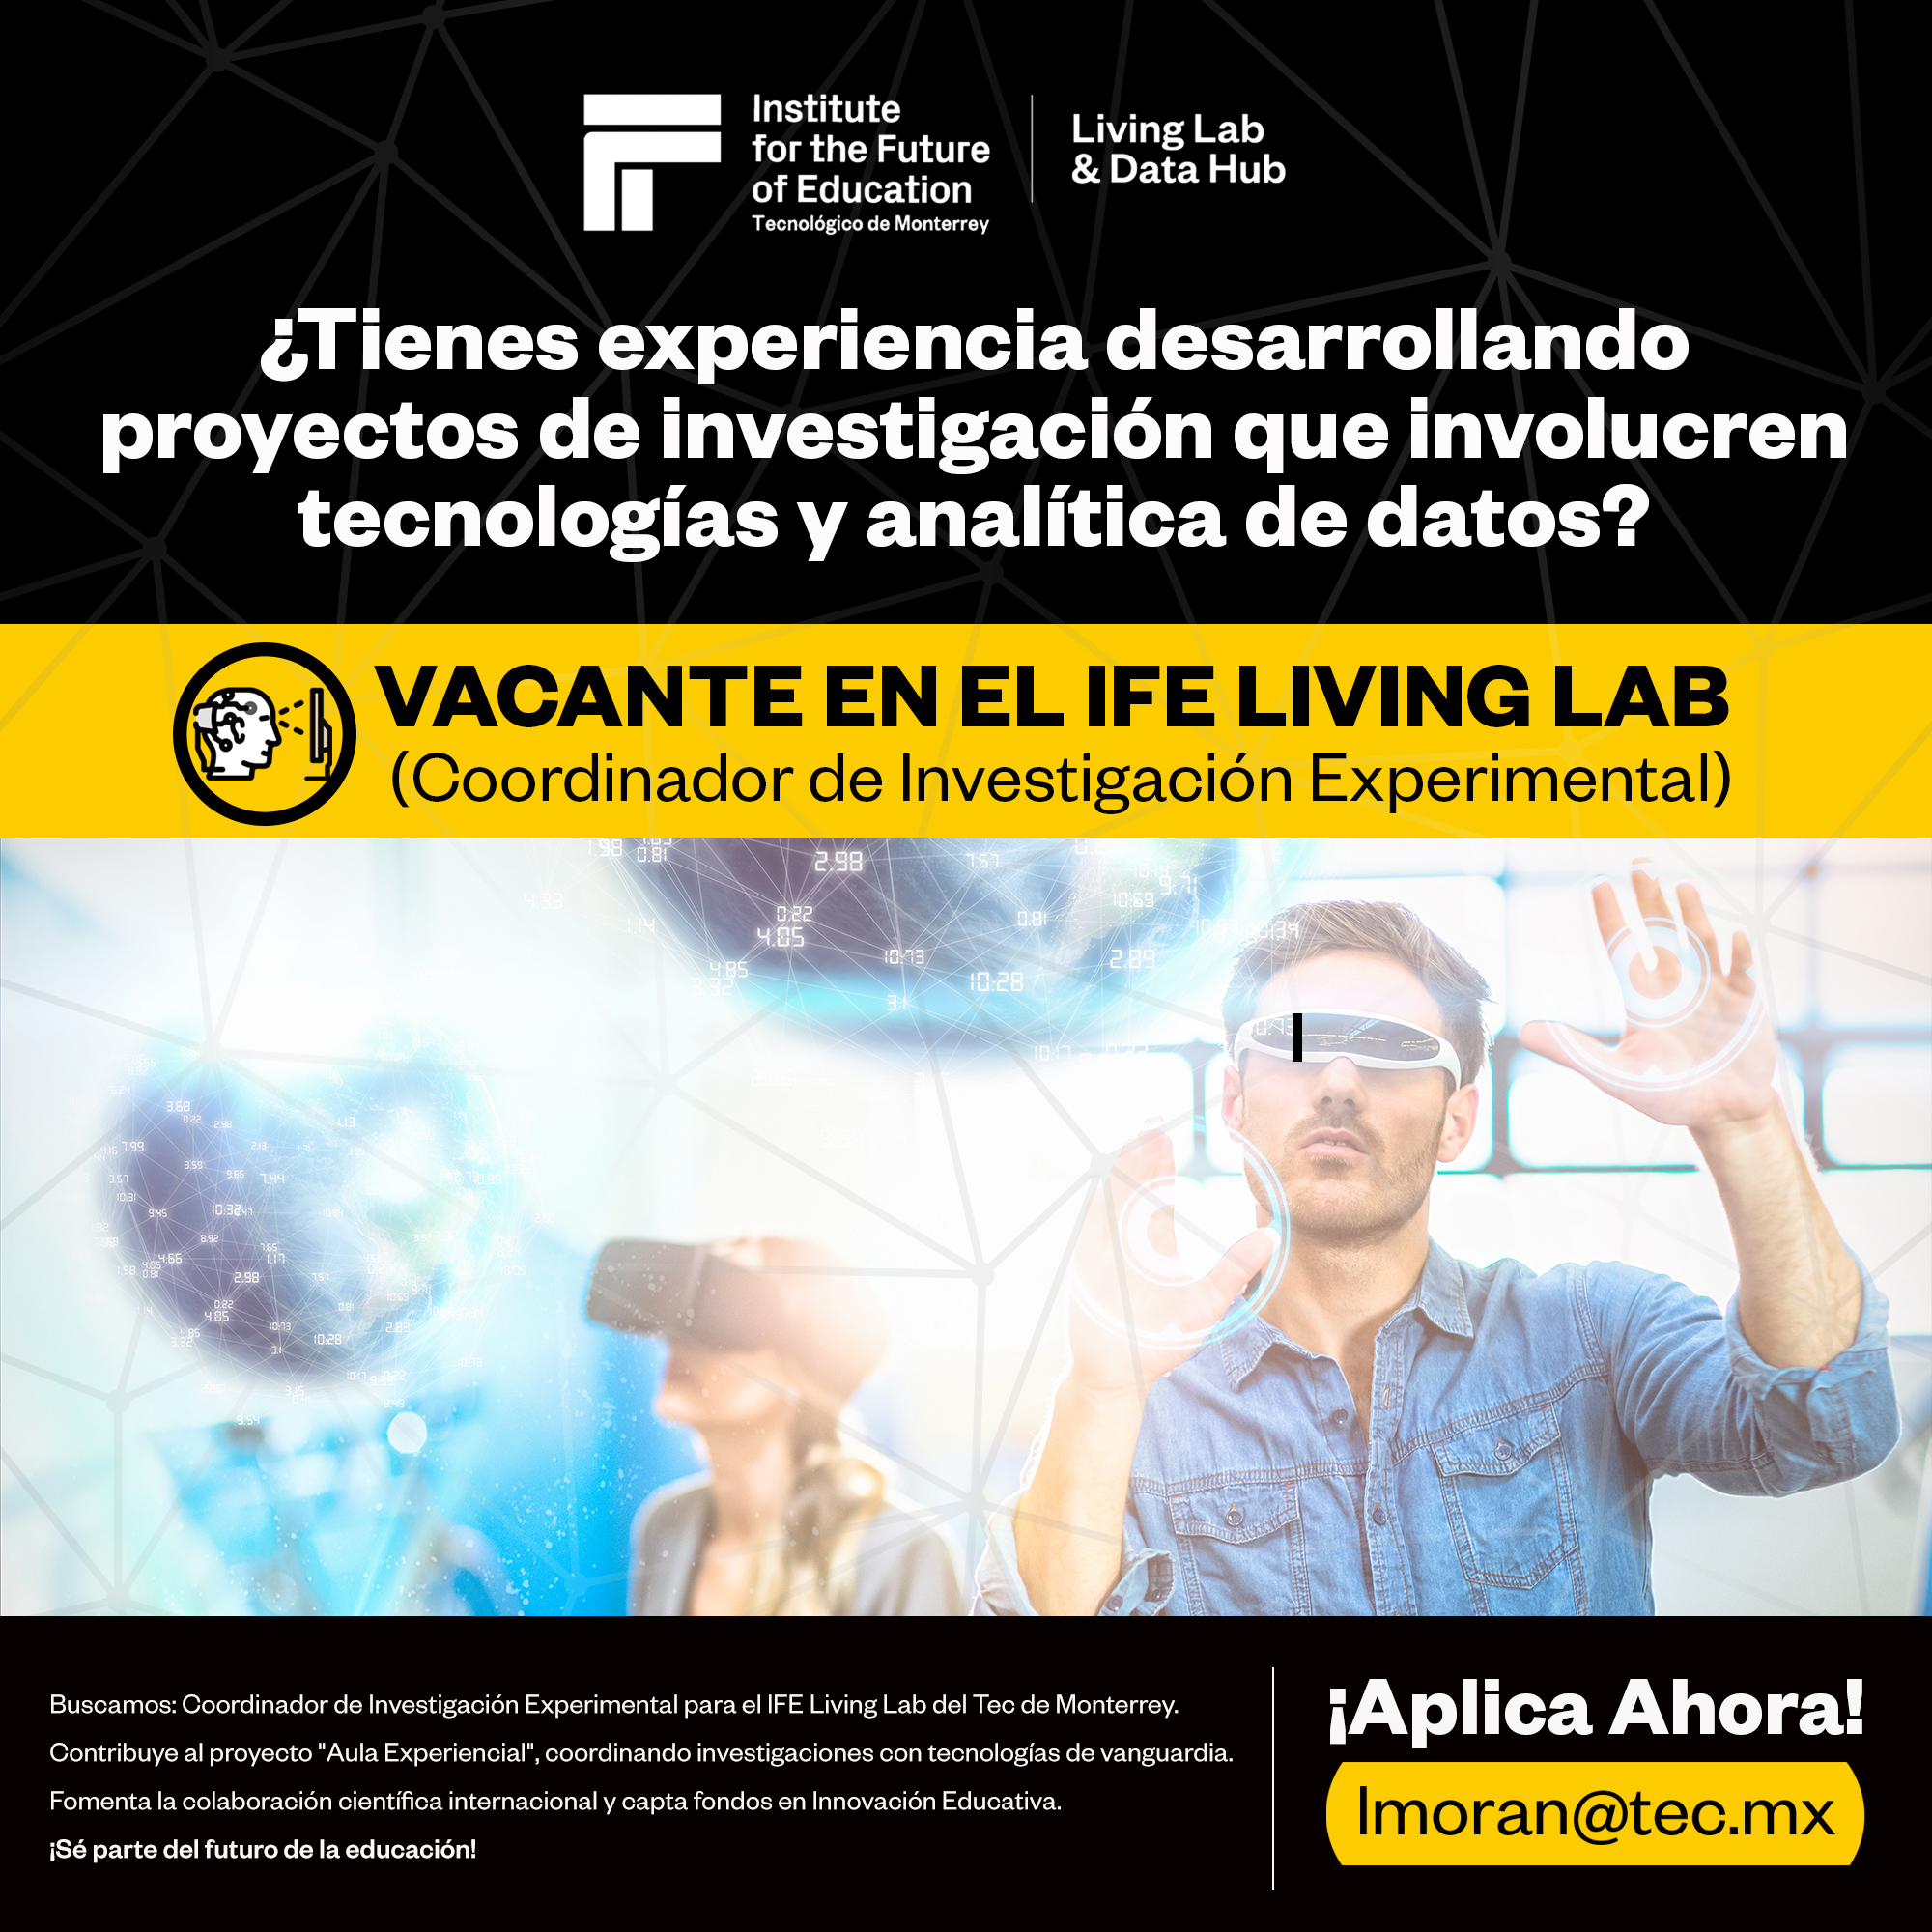 [ELS G0) GC) Living Lab

for the Future
Is of Education SEC al
Tecnolégico de Monterrey

ol ienes experiencia desarrollando
proyectos de investigacion que involucren
tecnologias y analitica de datos?

VACANTEENEL IFELIVING LAB

(Coordinador de Investigacion Experimental)

 

|}
Buscamos: Coordinador de Investigacion Experimental para el IFE Living Lab del Tec de Monterrey. H+ | Ah |
SEE = i Tal elller:] ora:

Contribuye al proyecto "Aula Experiencial®, coordinando investigaciones con tecnologias de vanguardia.

Fomenta la colaboracion cientifica internacional y capta fondos en Innovacion Educativa. | m 0 ran @tec m X
.

iSé parte del futuro de la educacion!